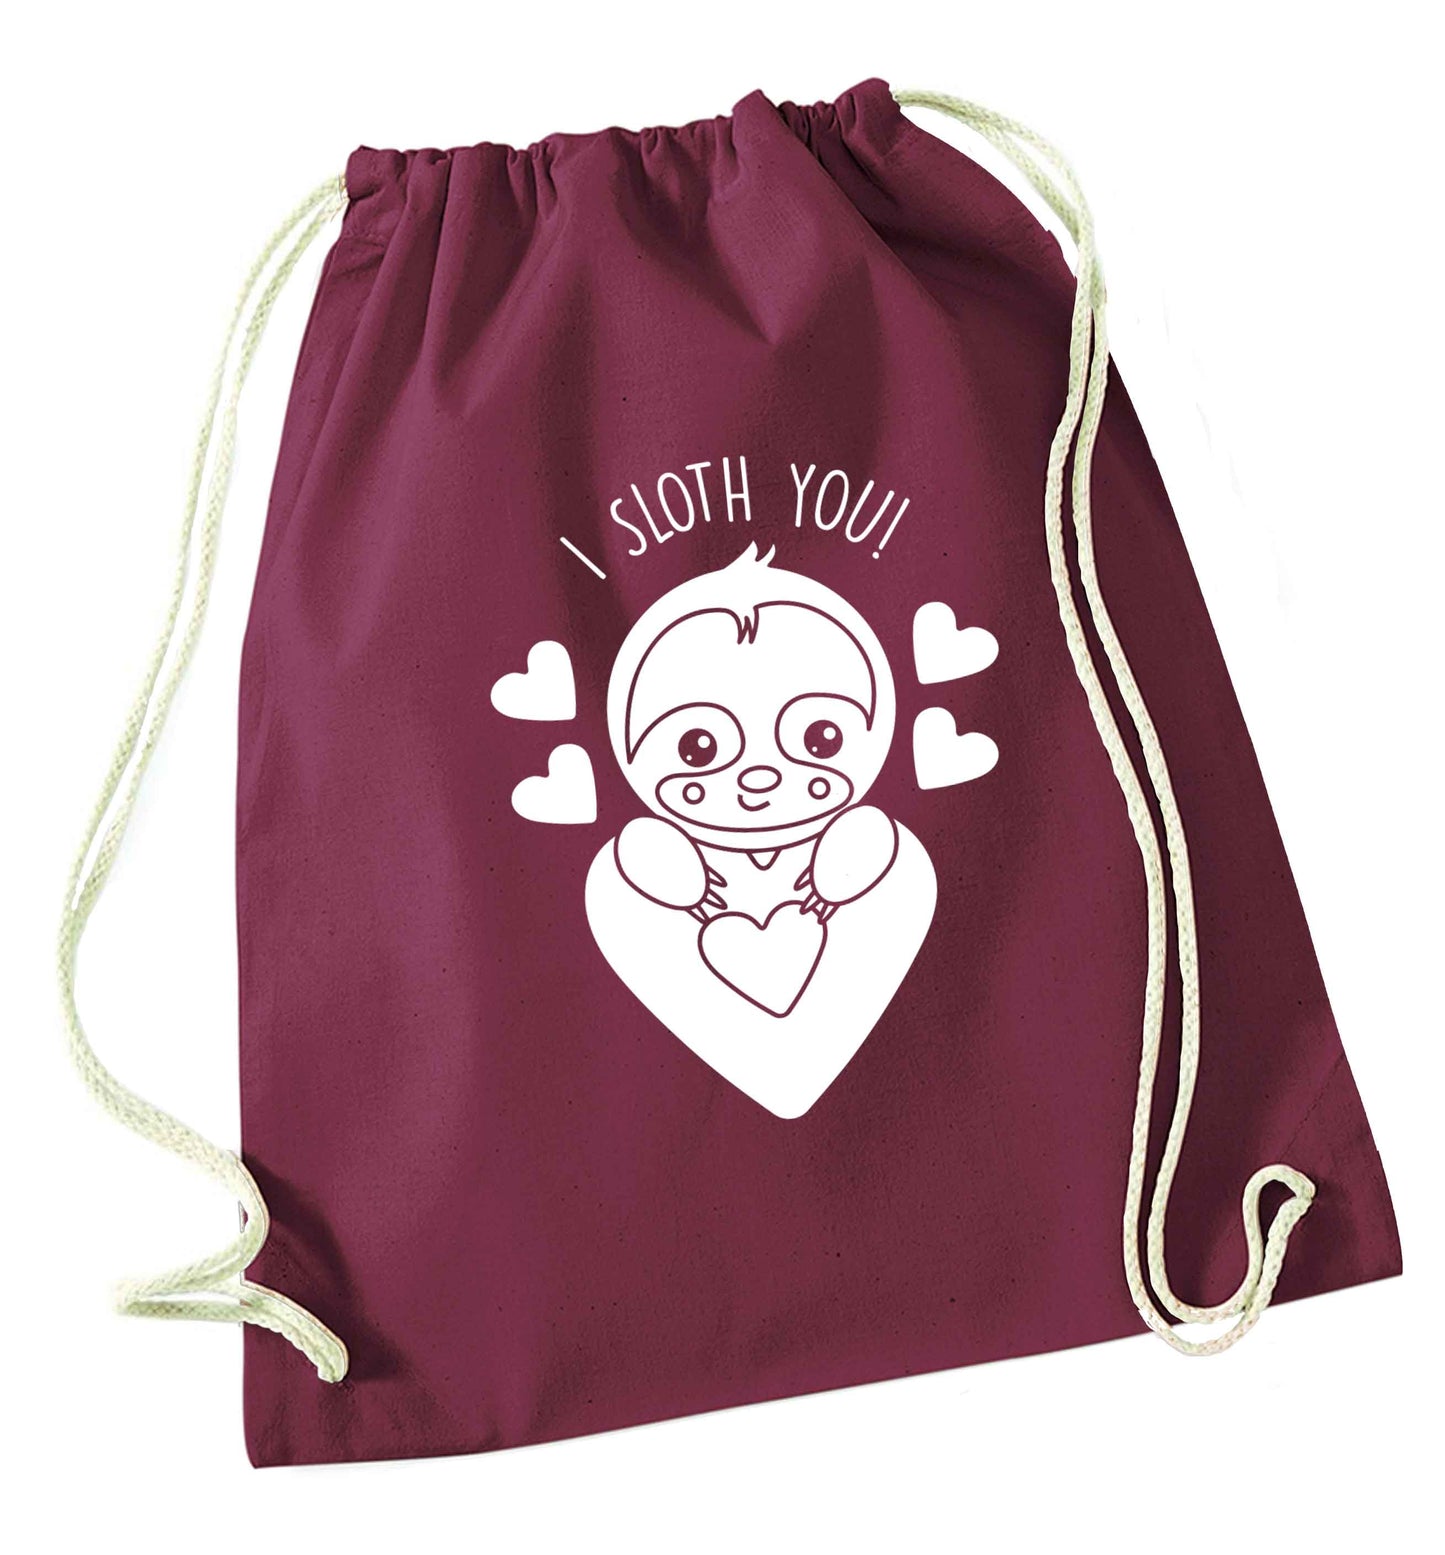 I sloth you maroon drawstring bag